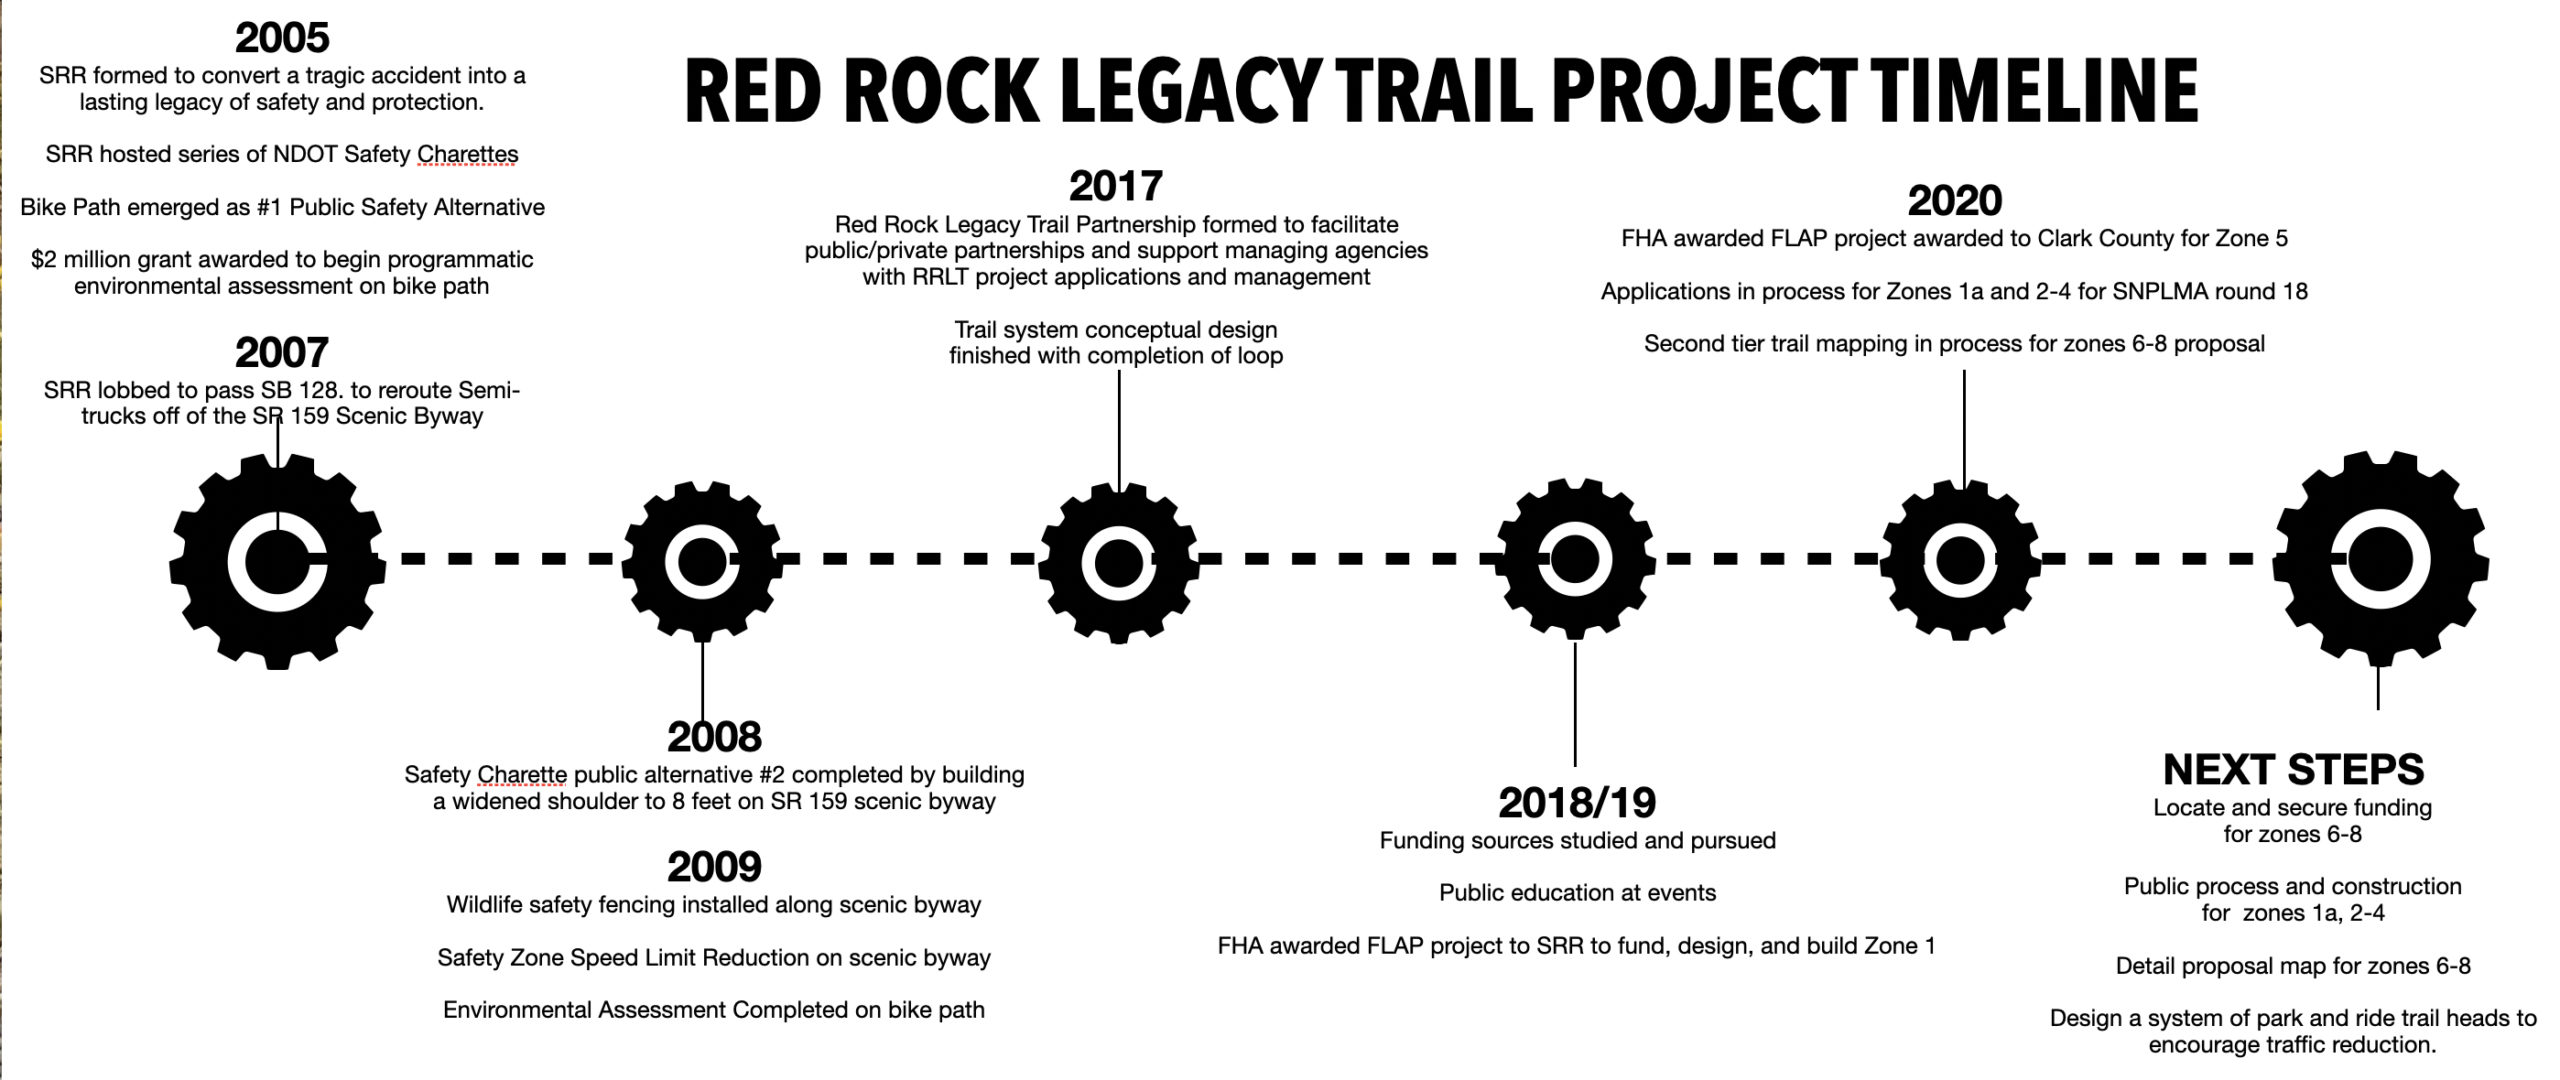 Red Rock Legacy Trails timeline